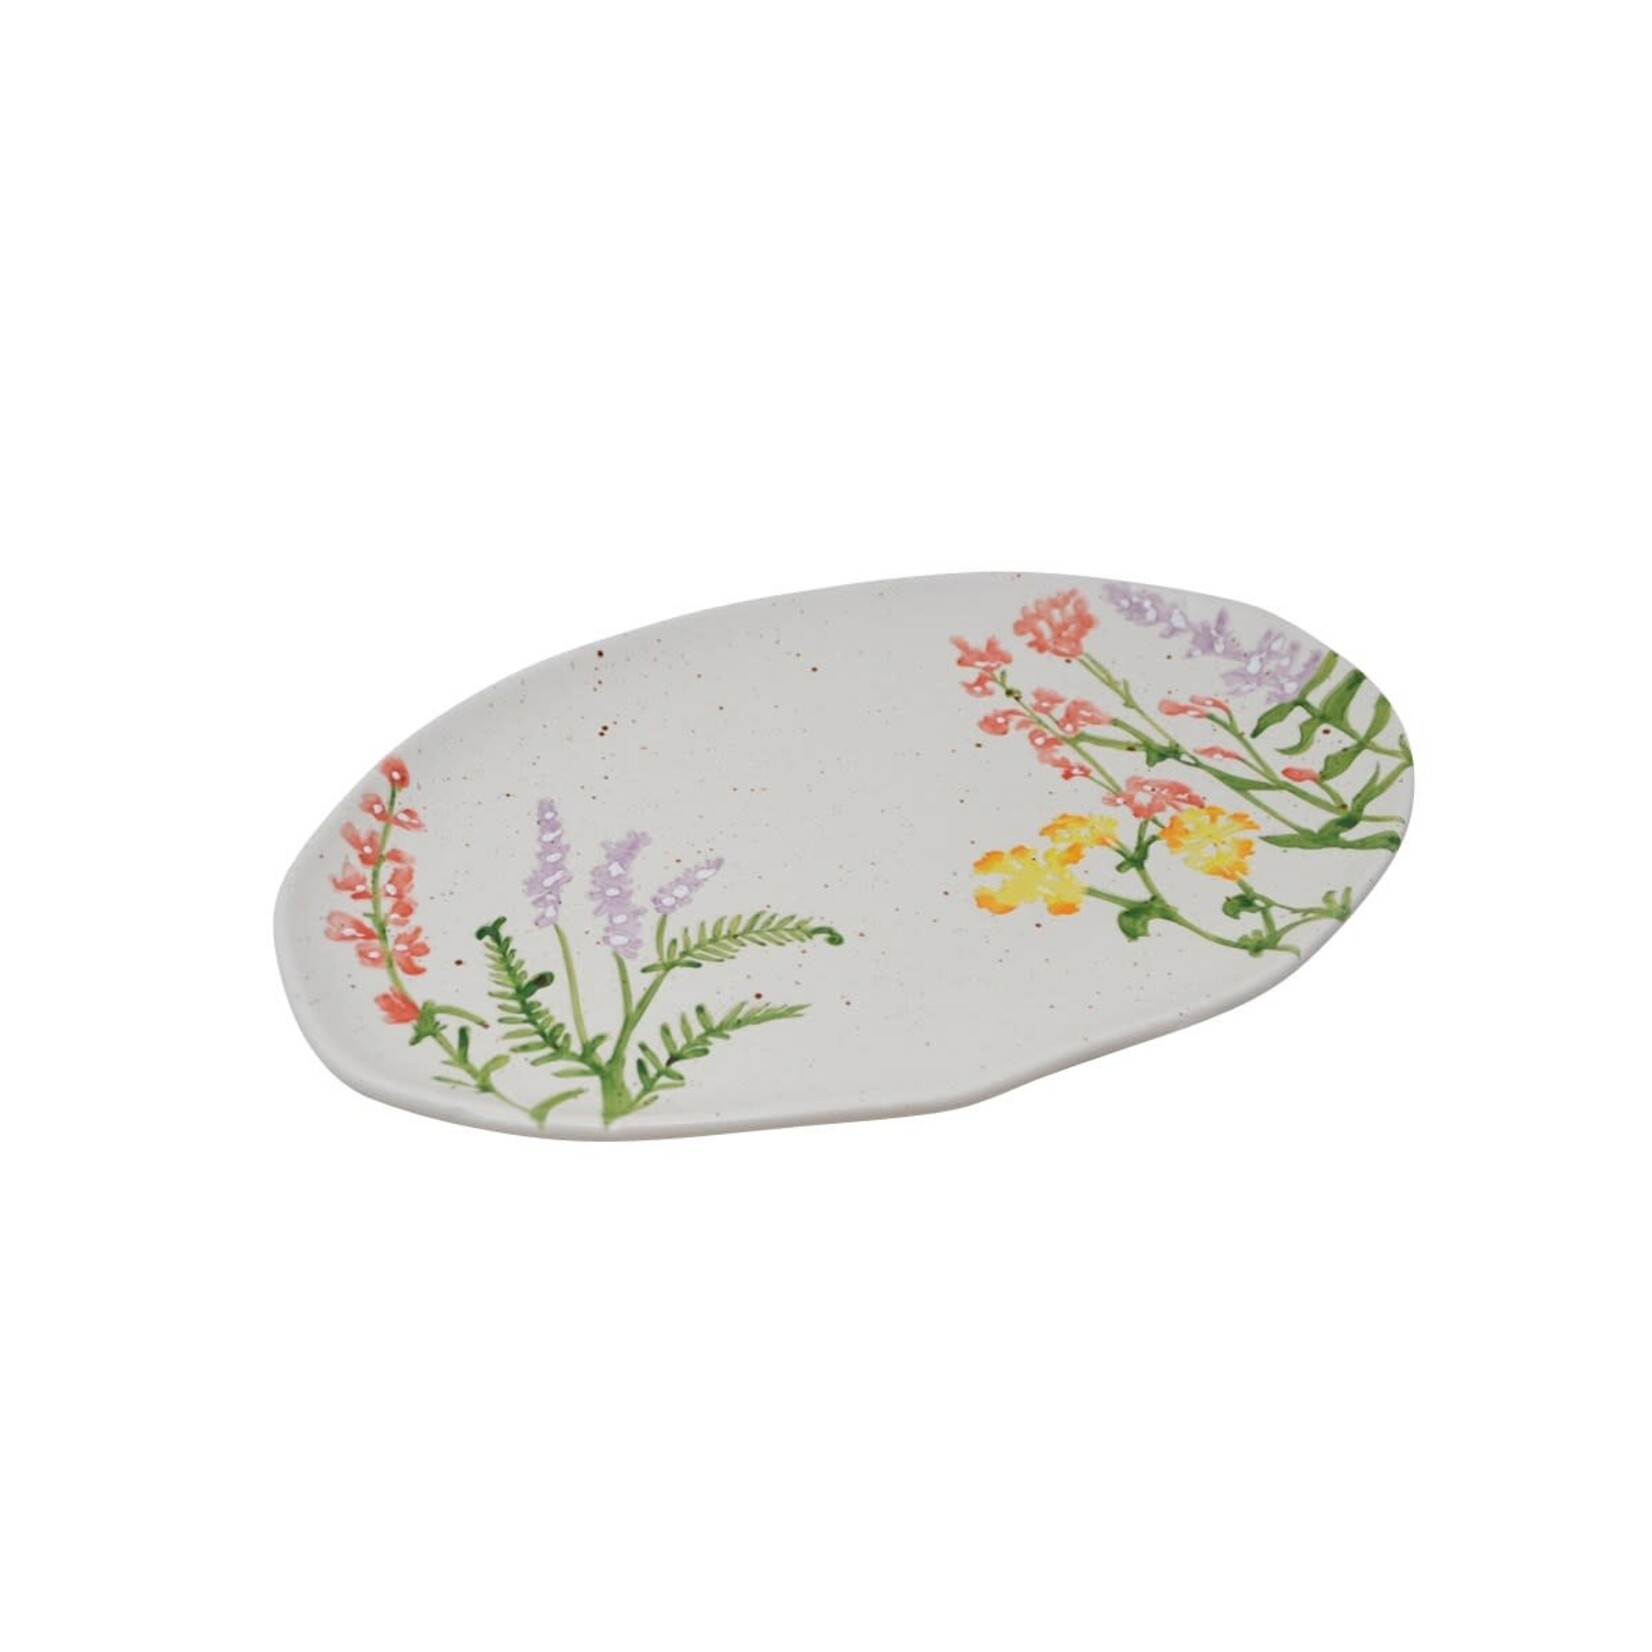 Flower Meadow Platter - 13"x8"